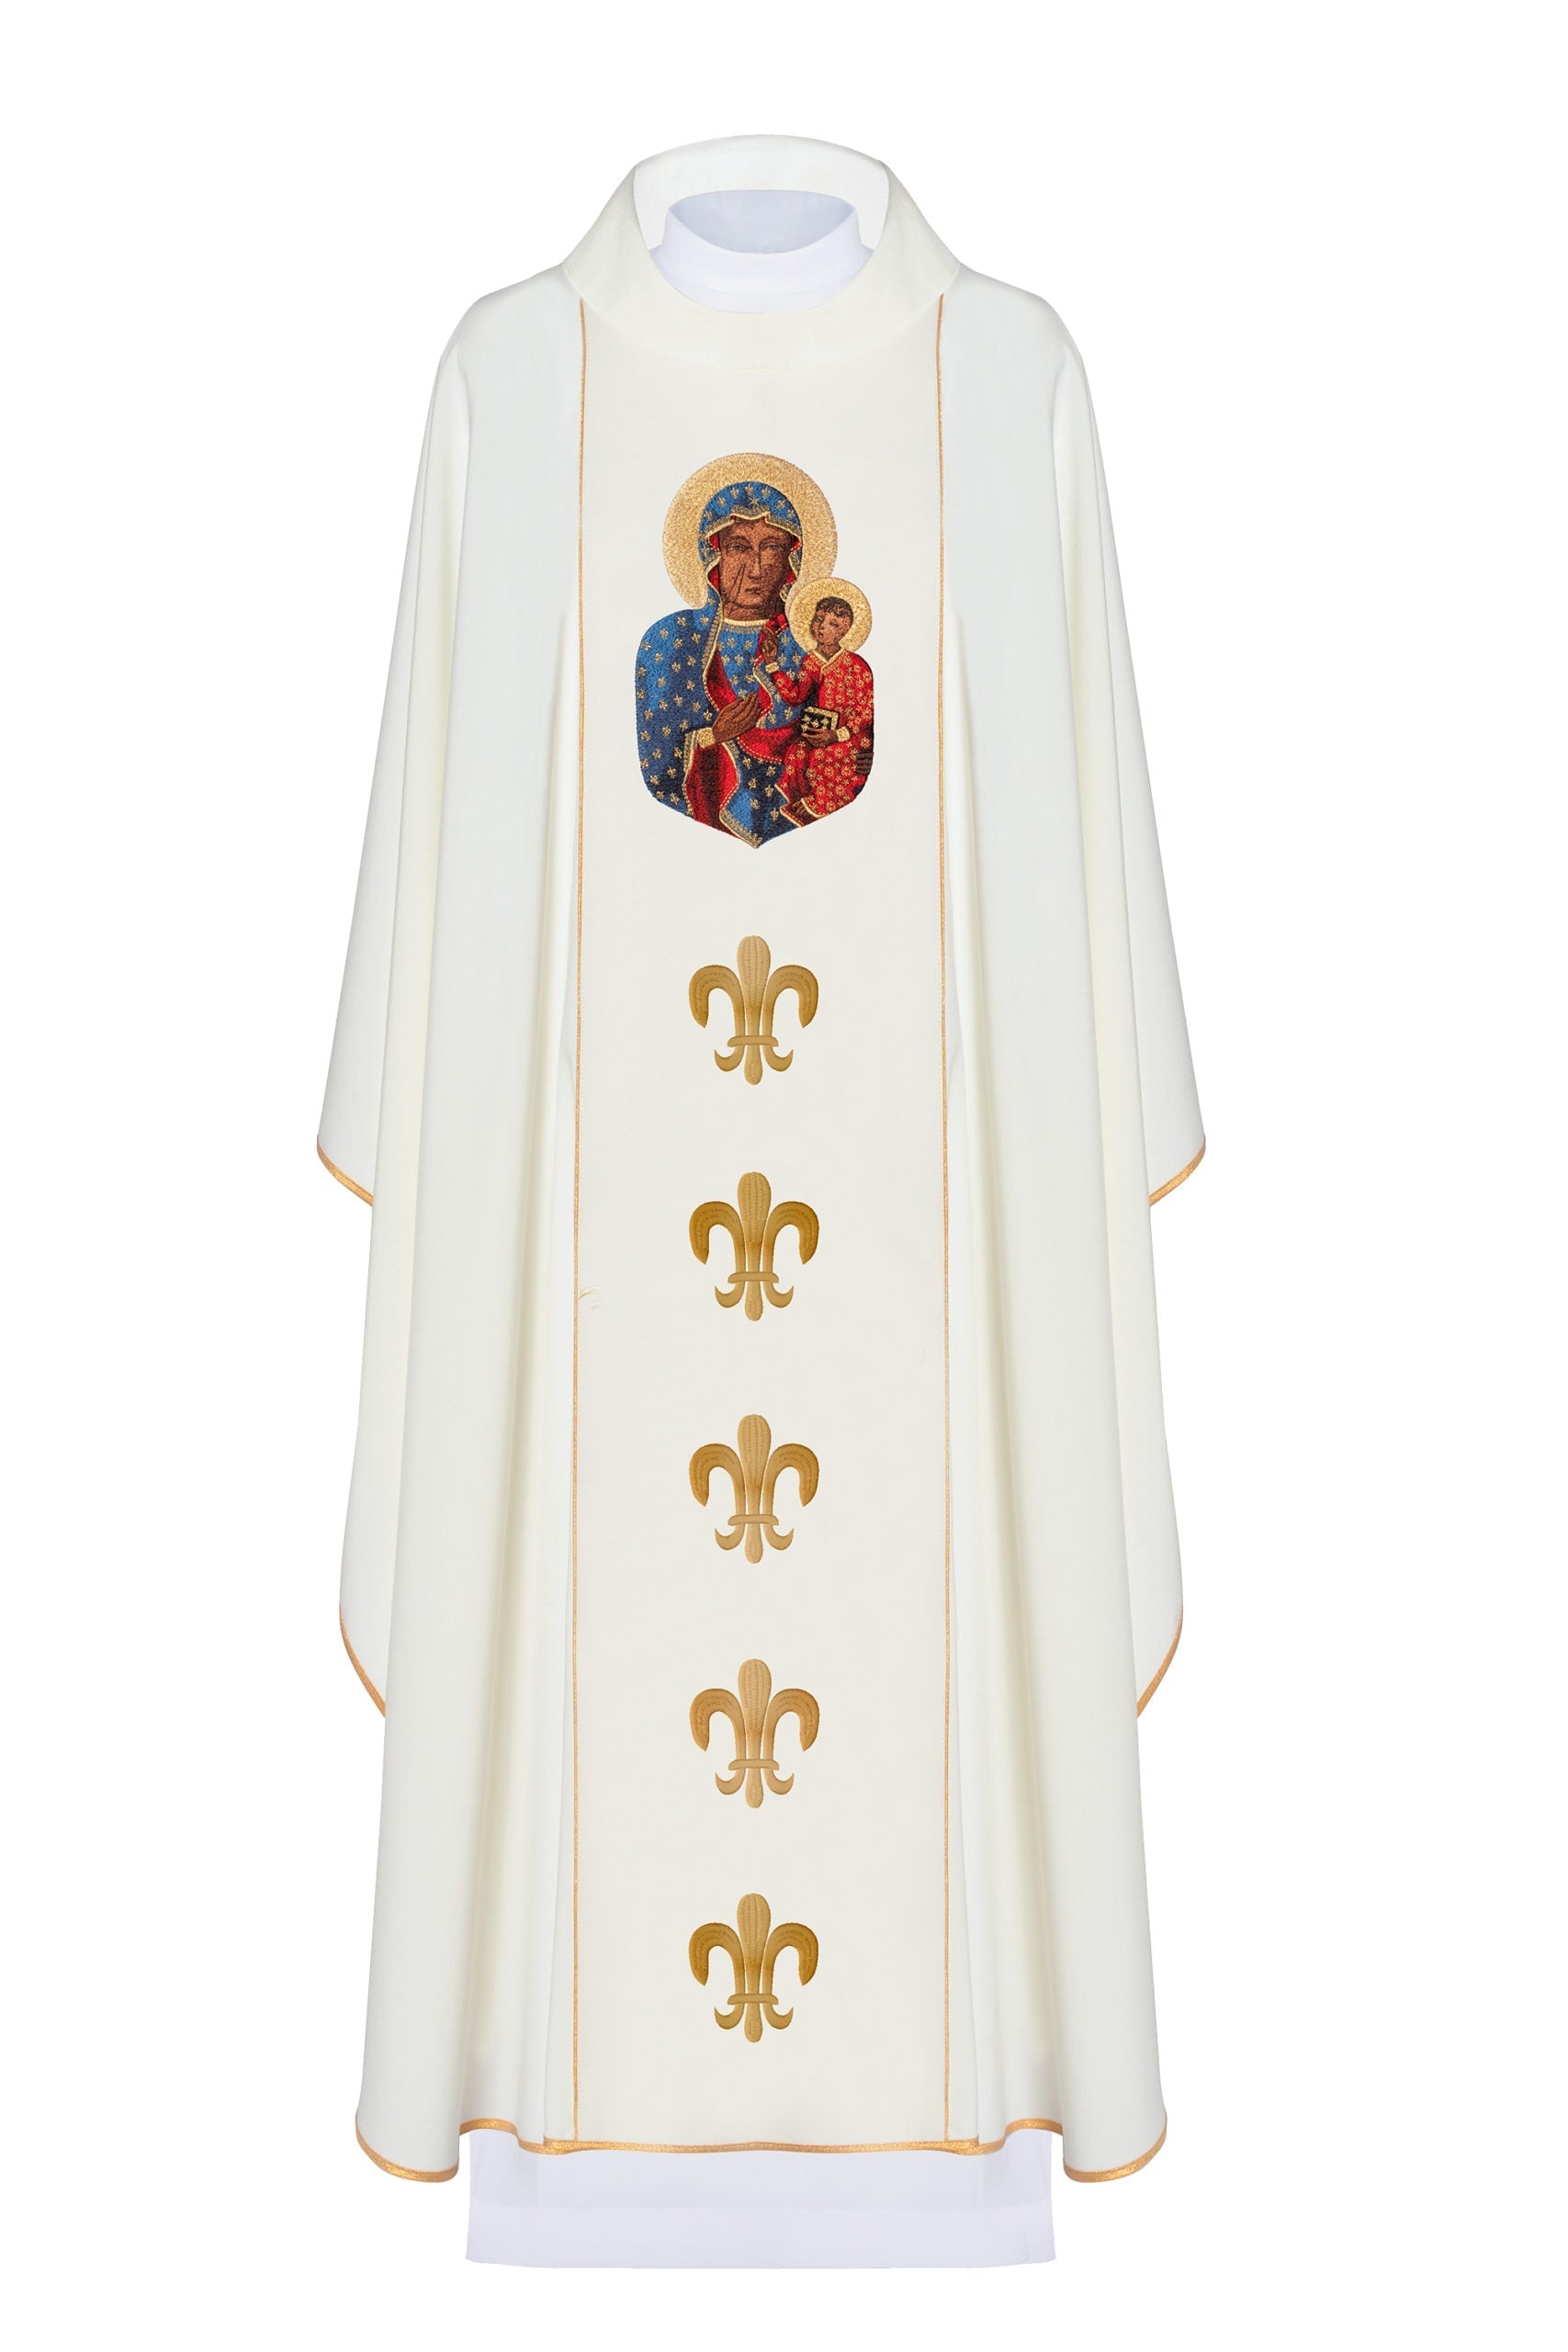 Ornat z wizerunkiem Matki Boskiej Częstochowskiej w kolorze ecru